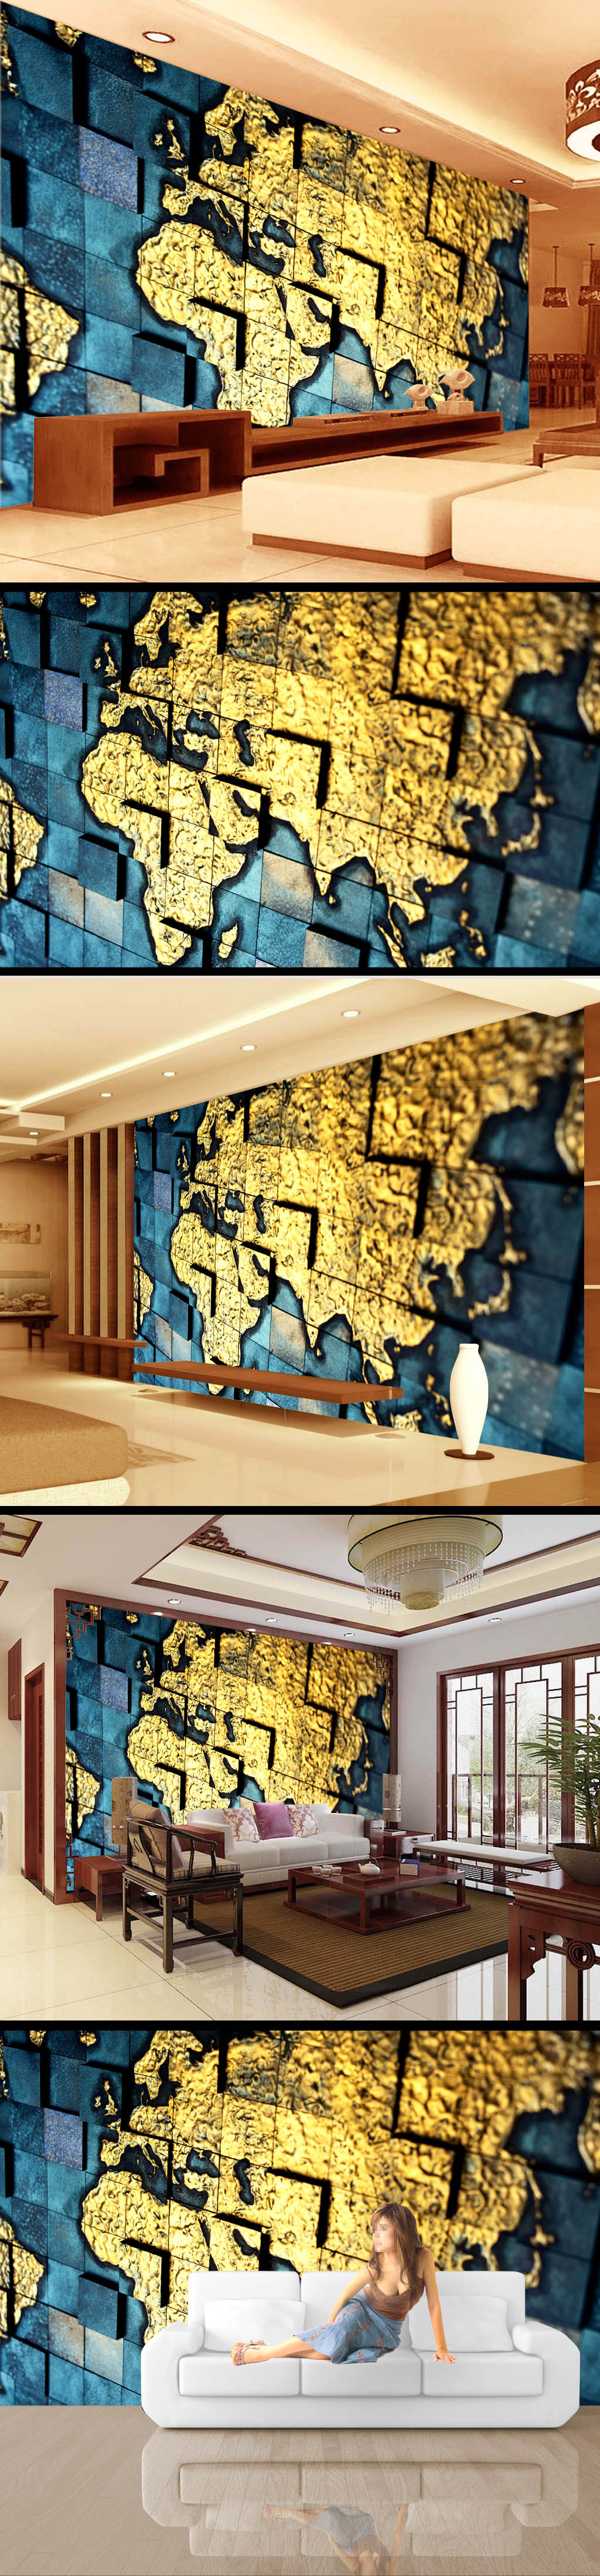 世界地图3d立体浮雕电视墙设计图片